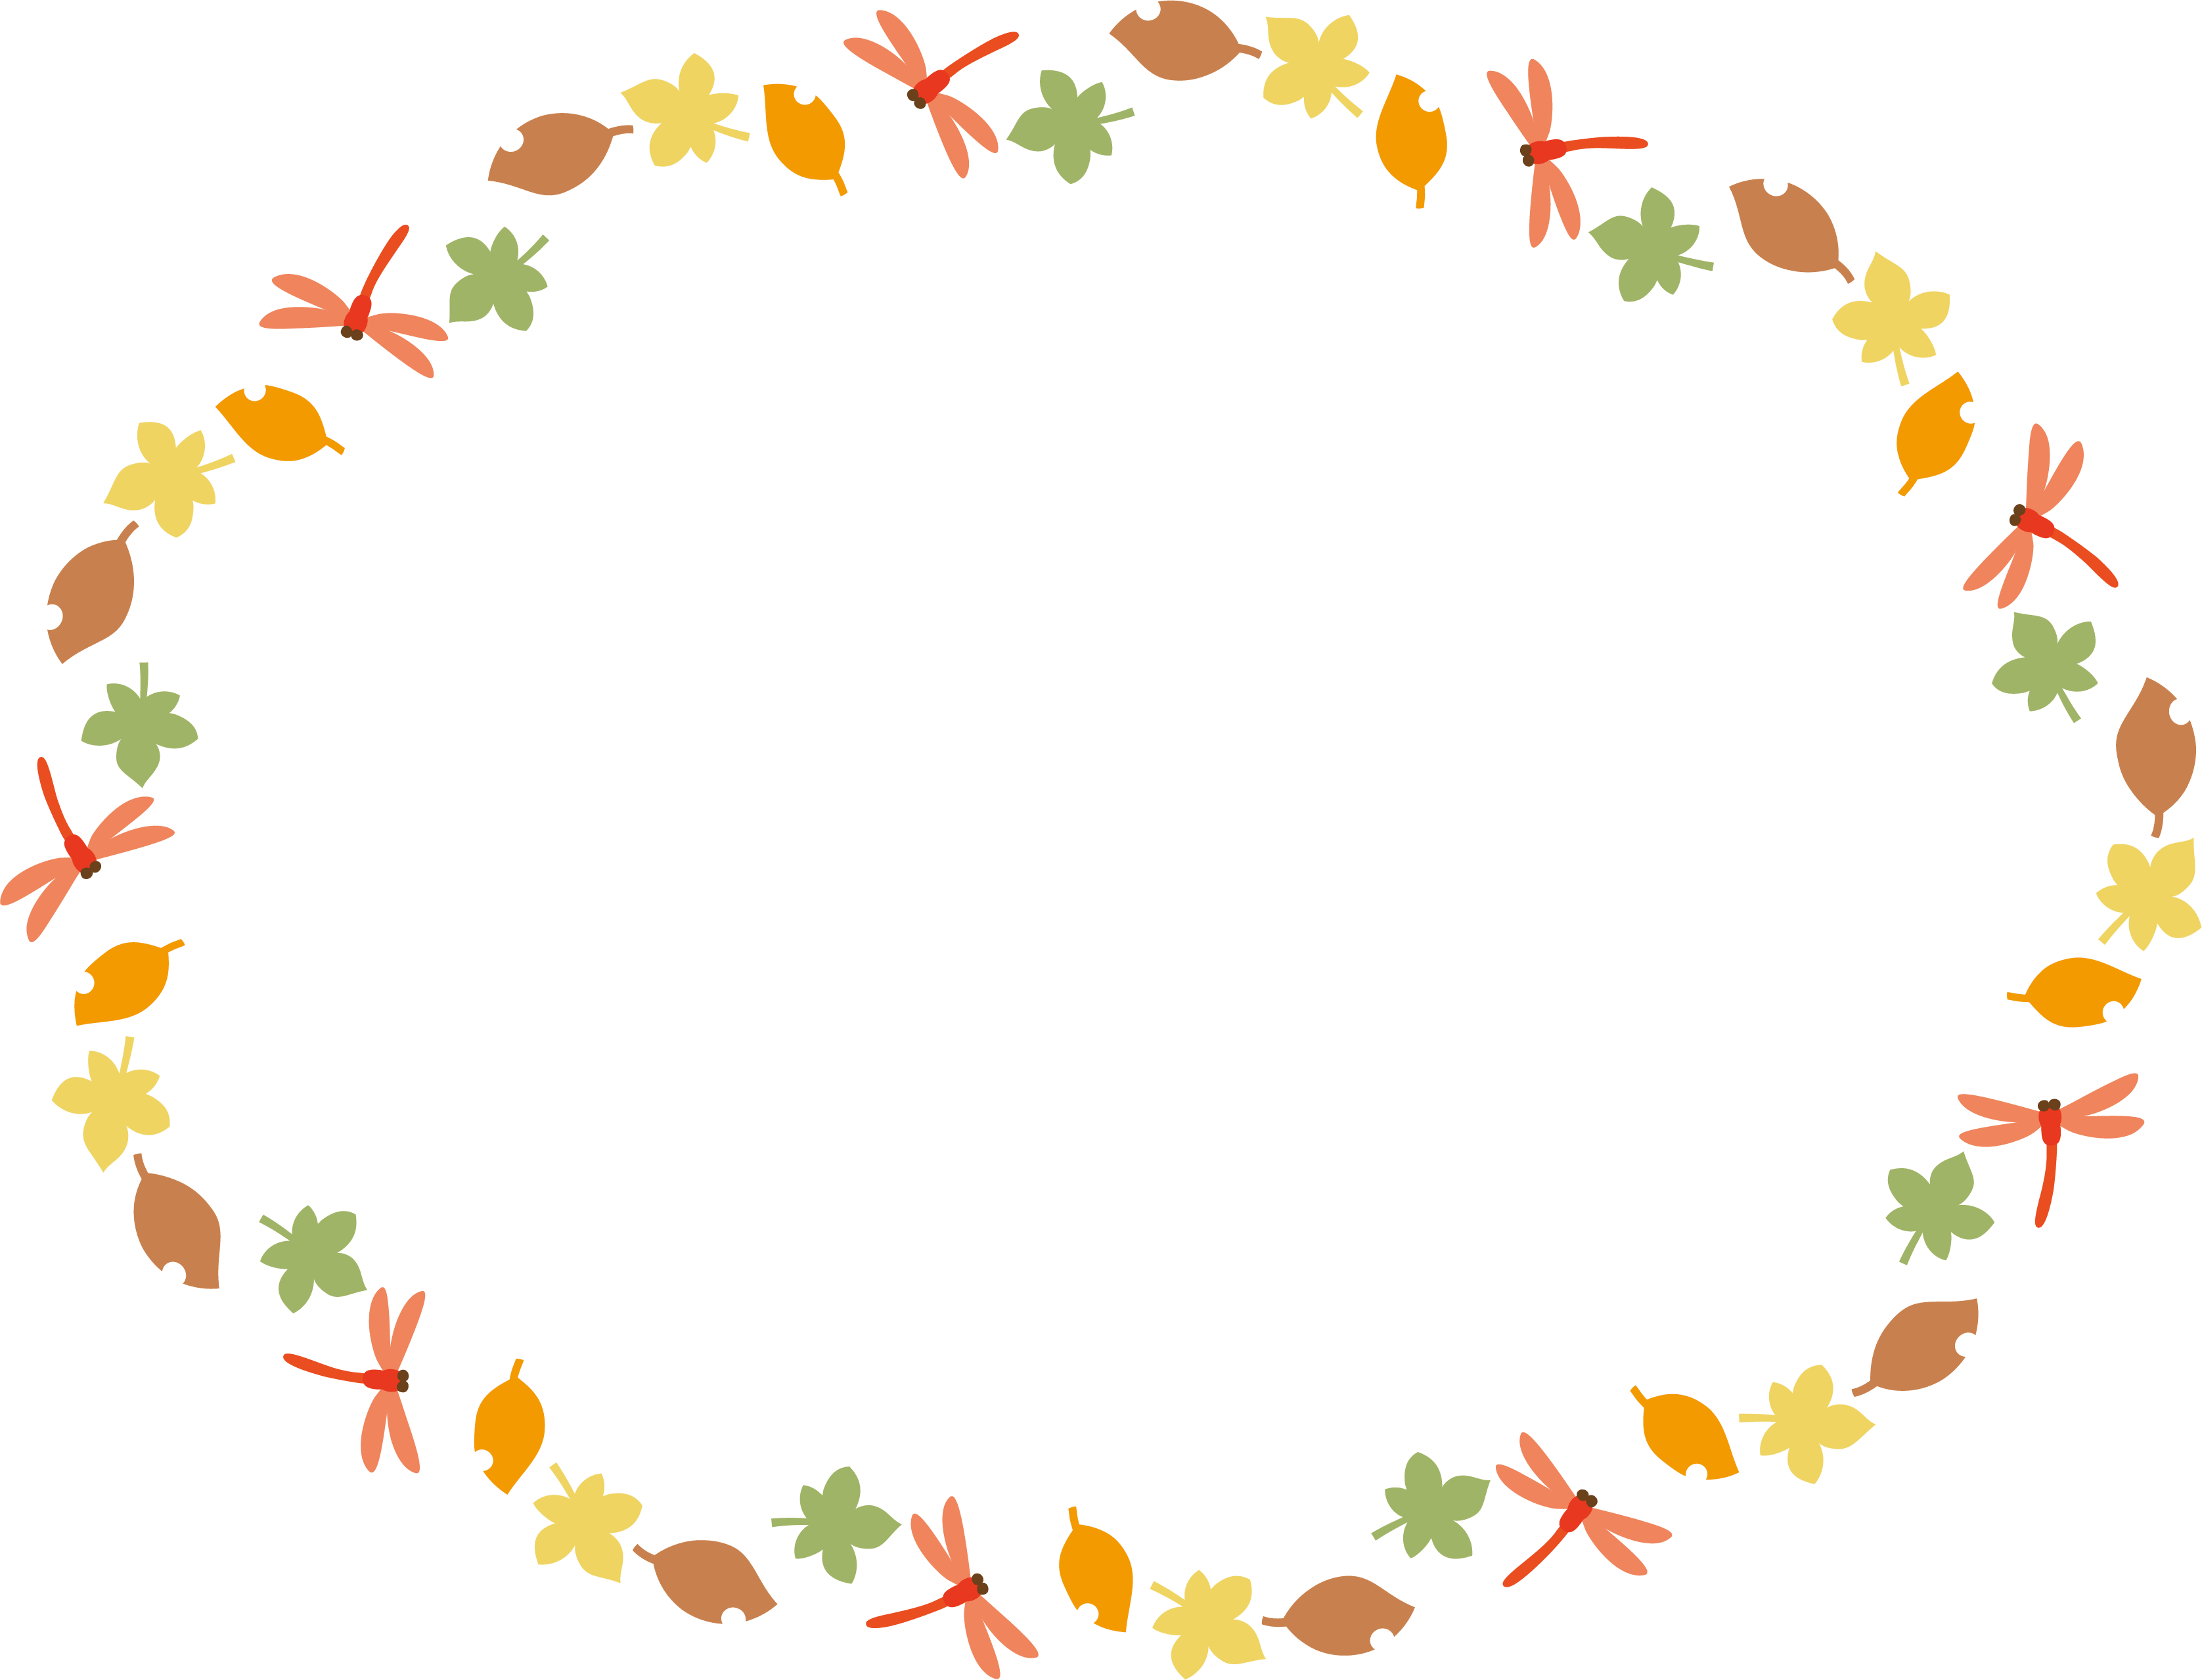 秋 赤とんぼと落ち葉の楕円フレーム飾り枠 イラスト素材 超多くの無料かわいいイラスト素材